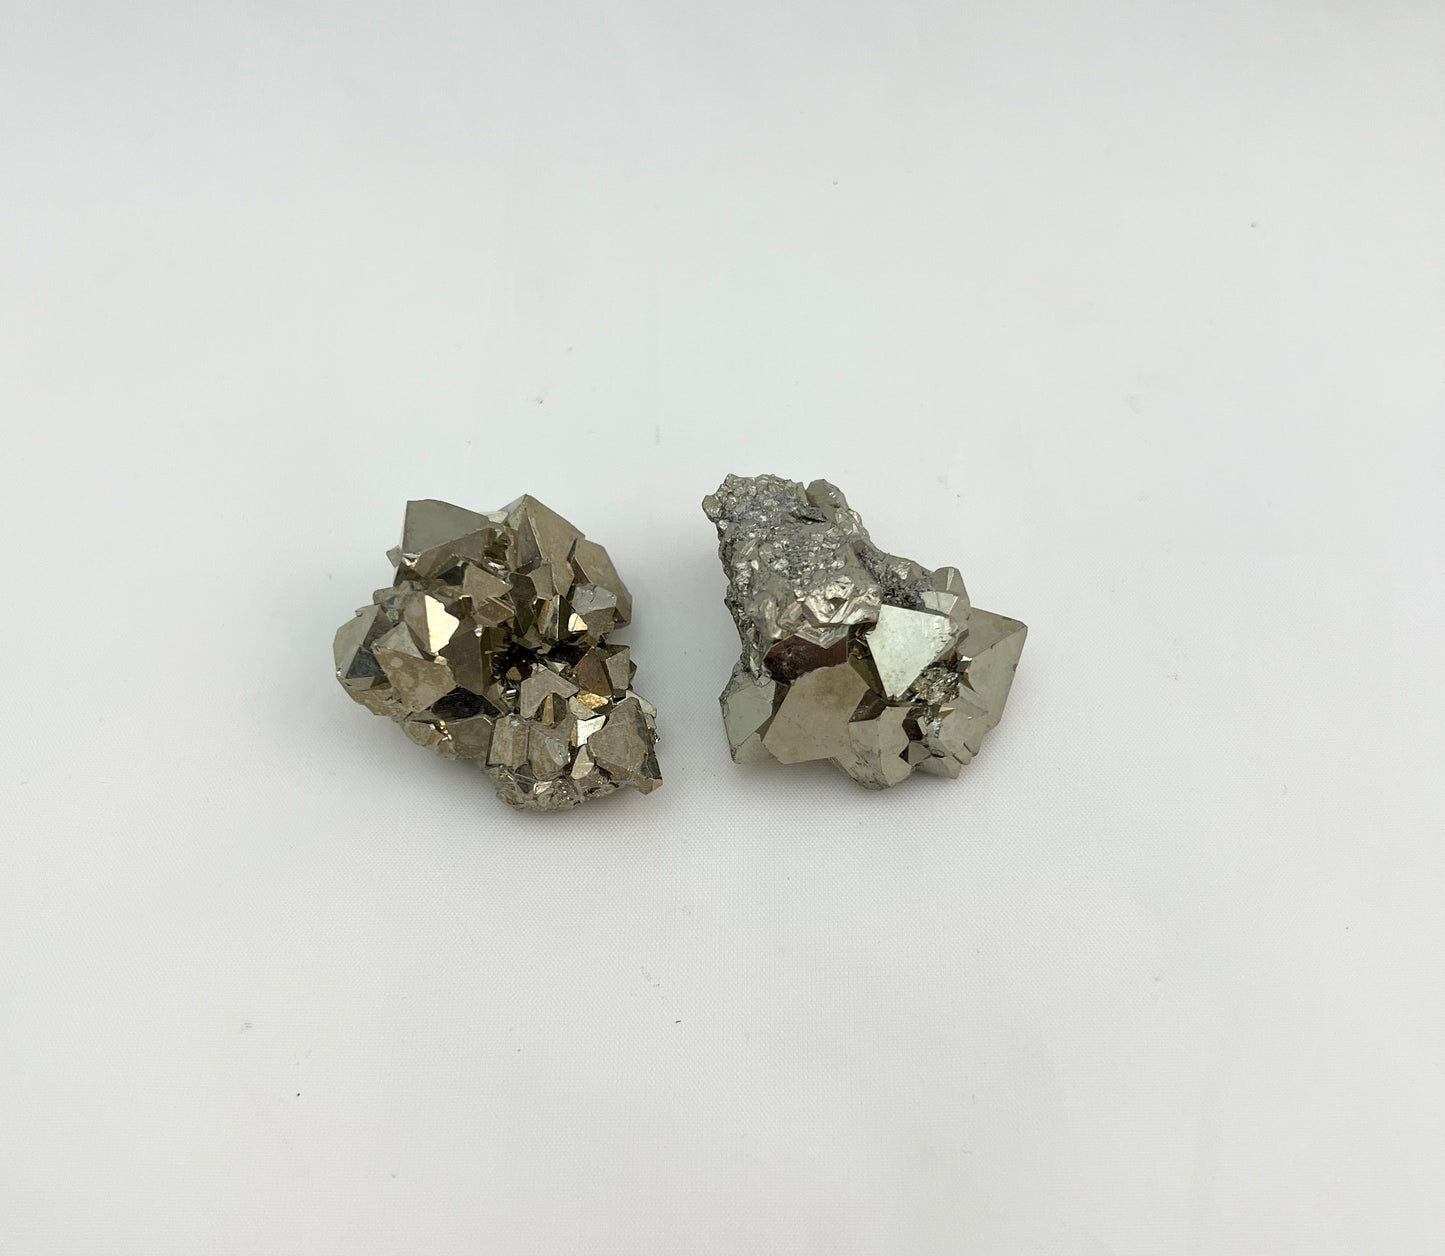 Peruvian Pyrite Specimen